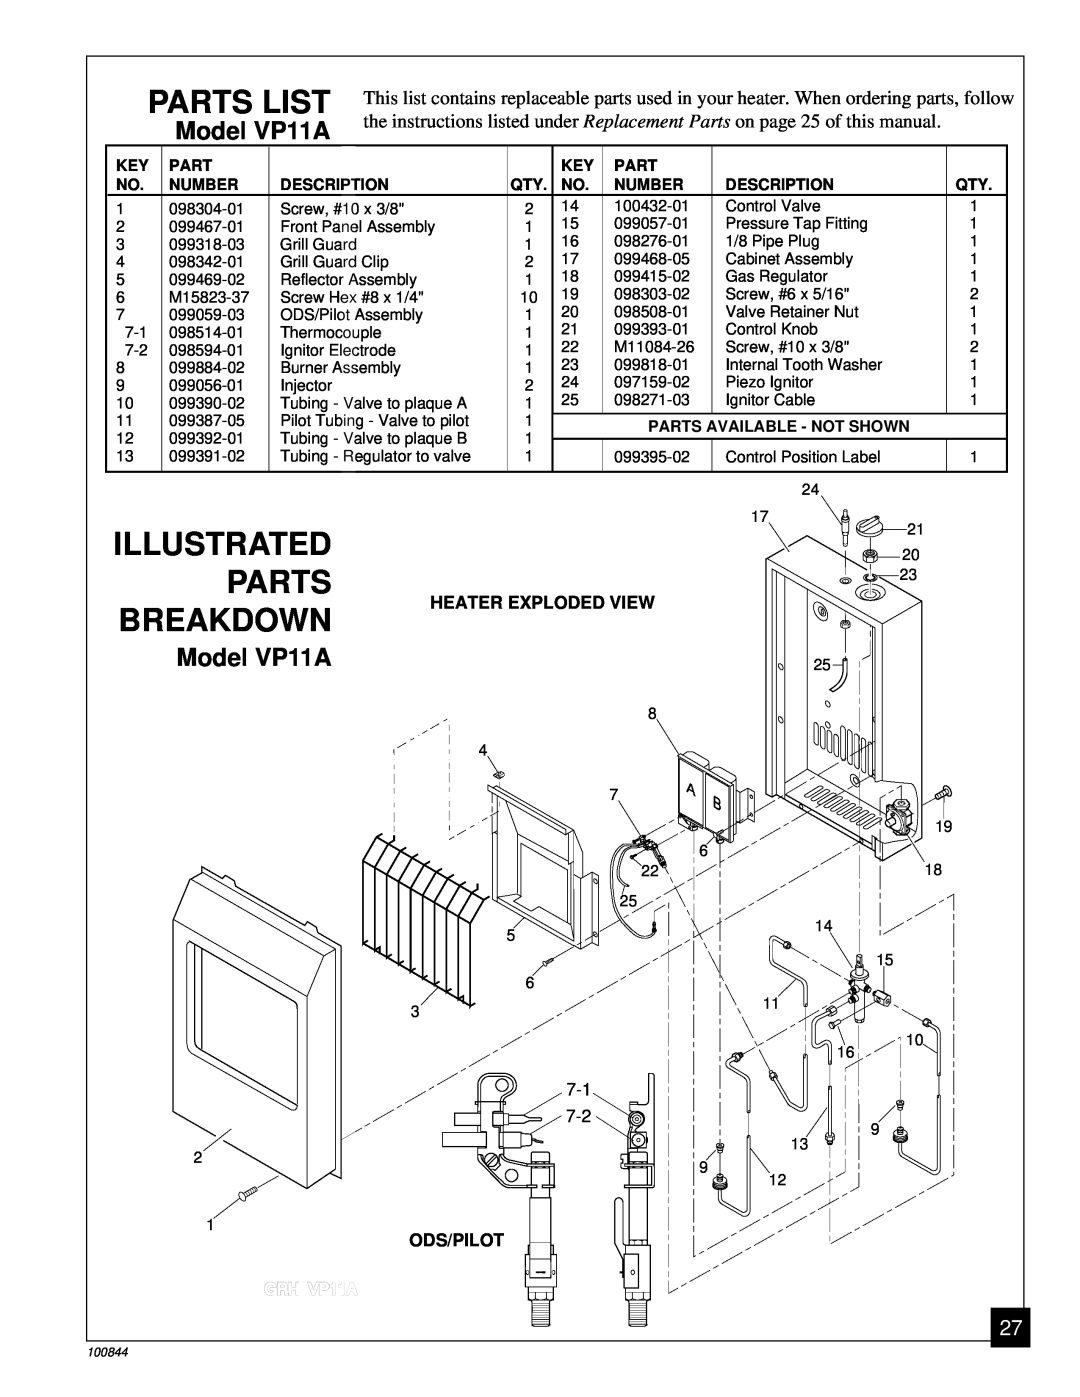 Desa Illustrated, Parts Breakdown, Model VP11A, Parts List, Number, Description, Parts Available - Not Shown, GRH VP11A 